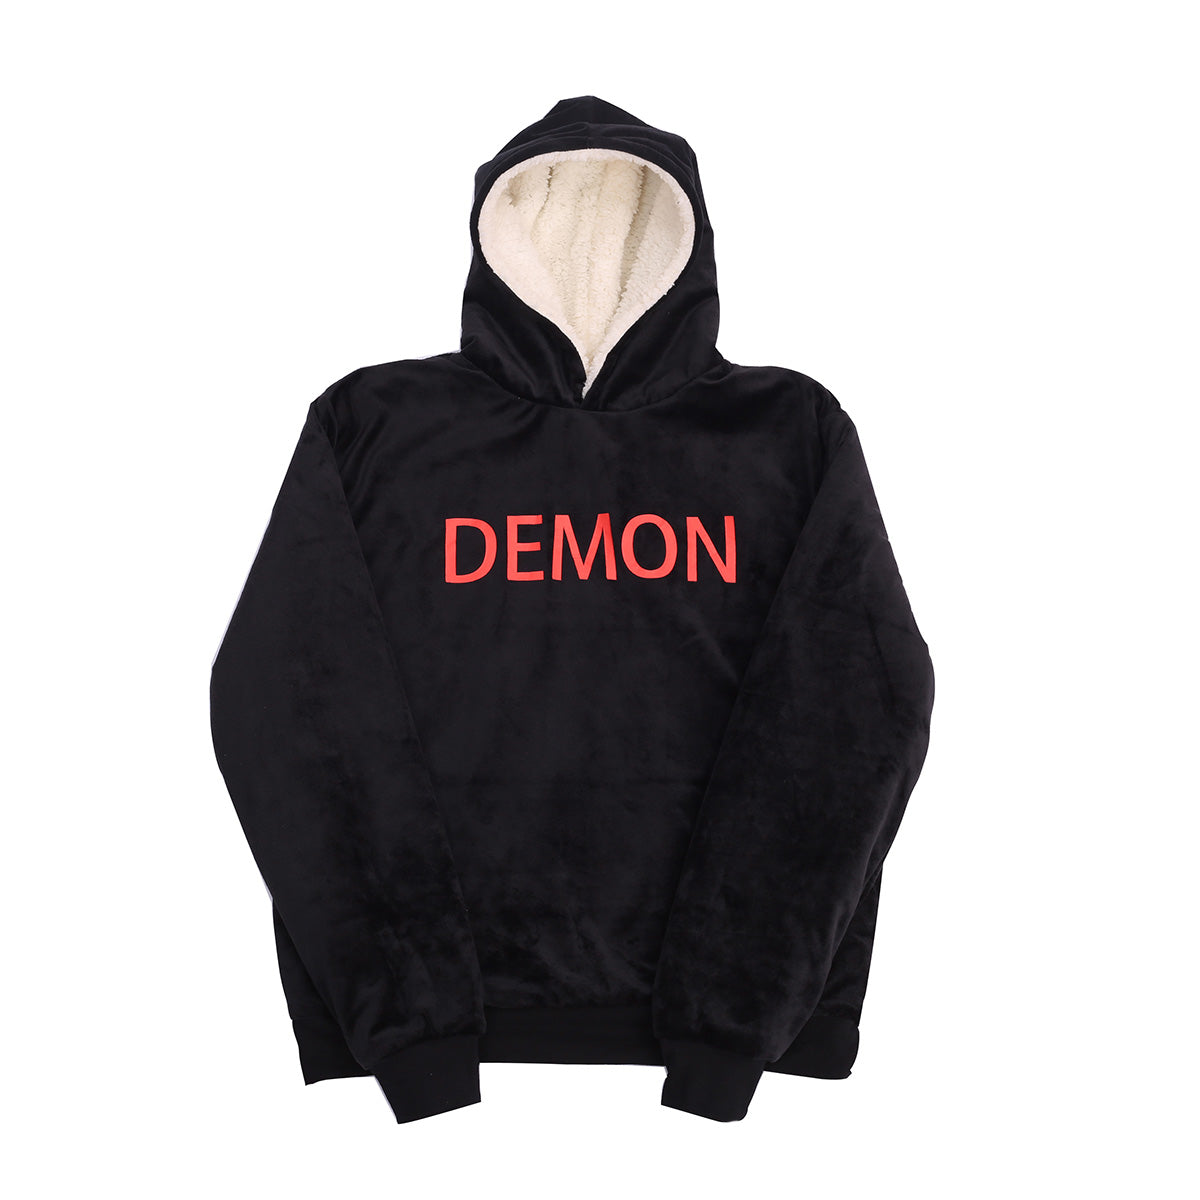 devil and angel heart hoodie